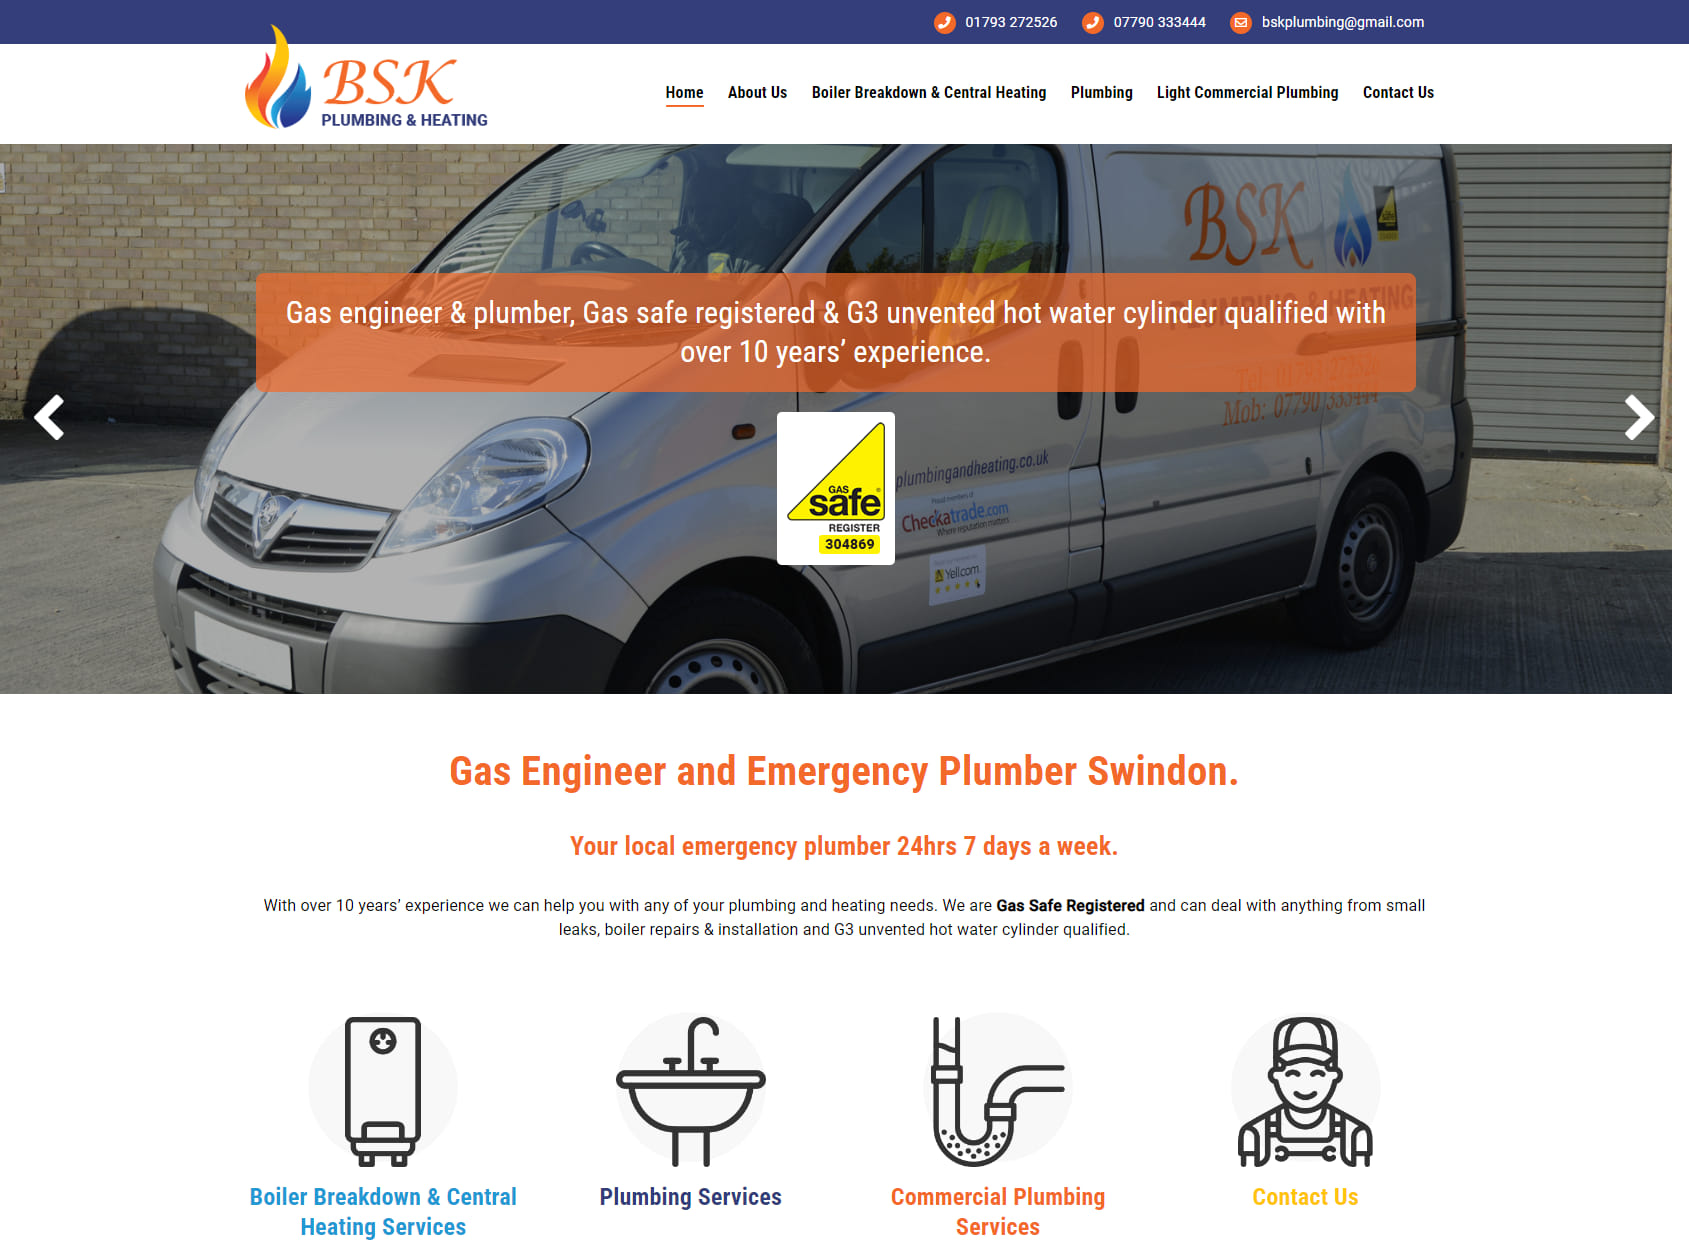 BSK Plumbing & Heating Ltd